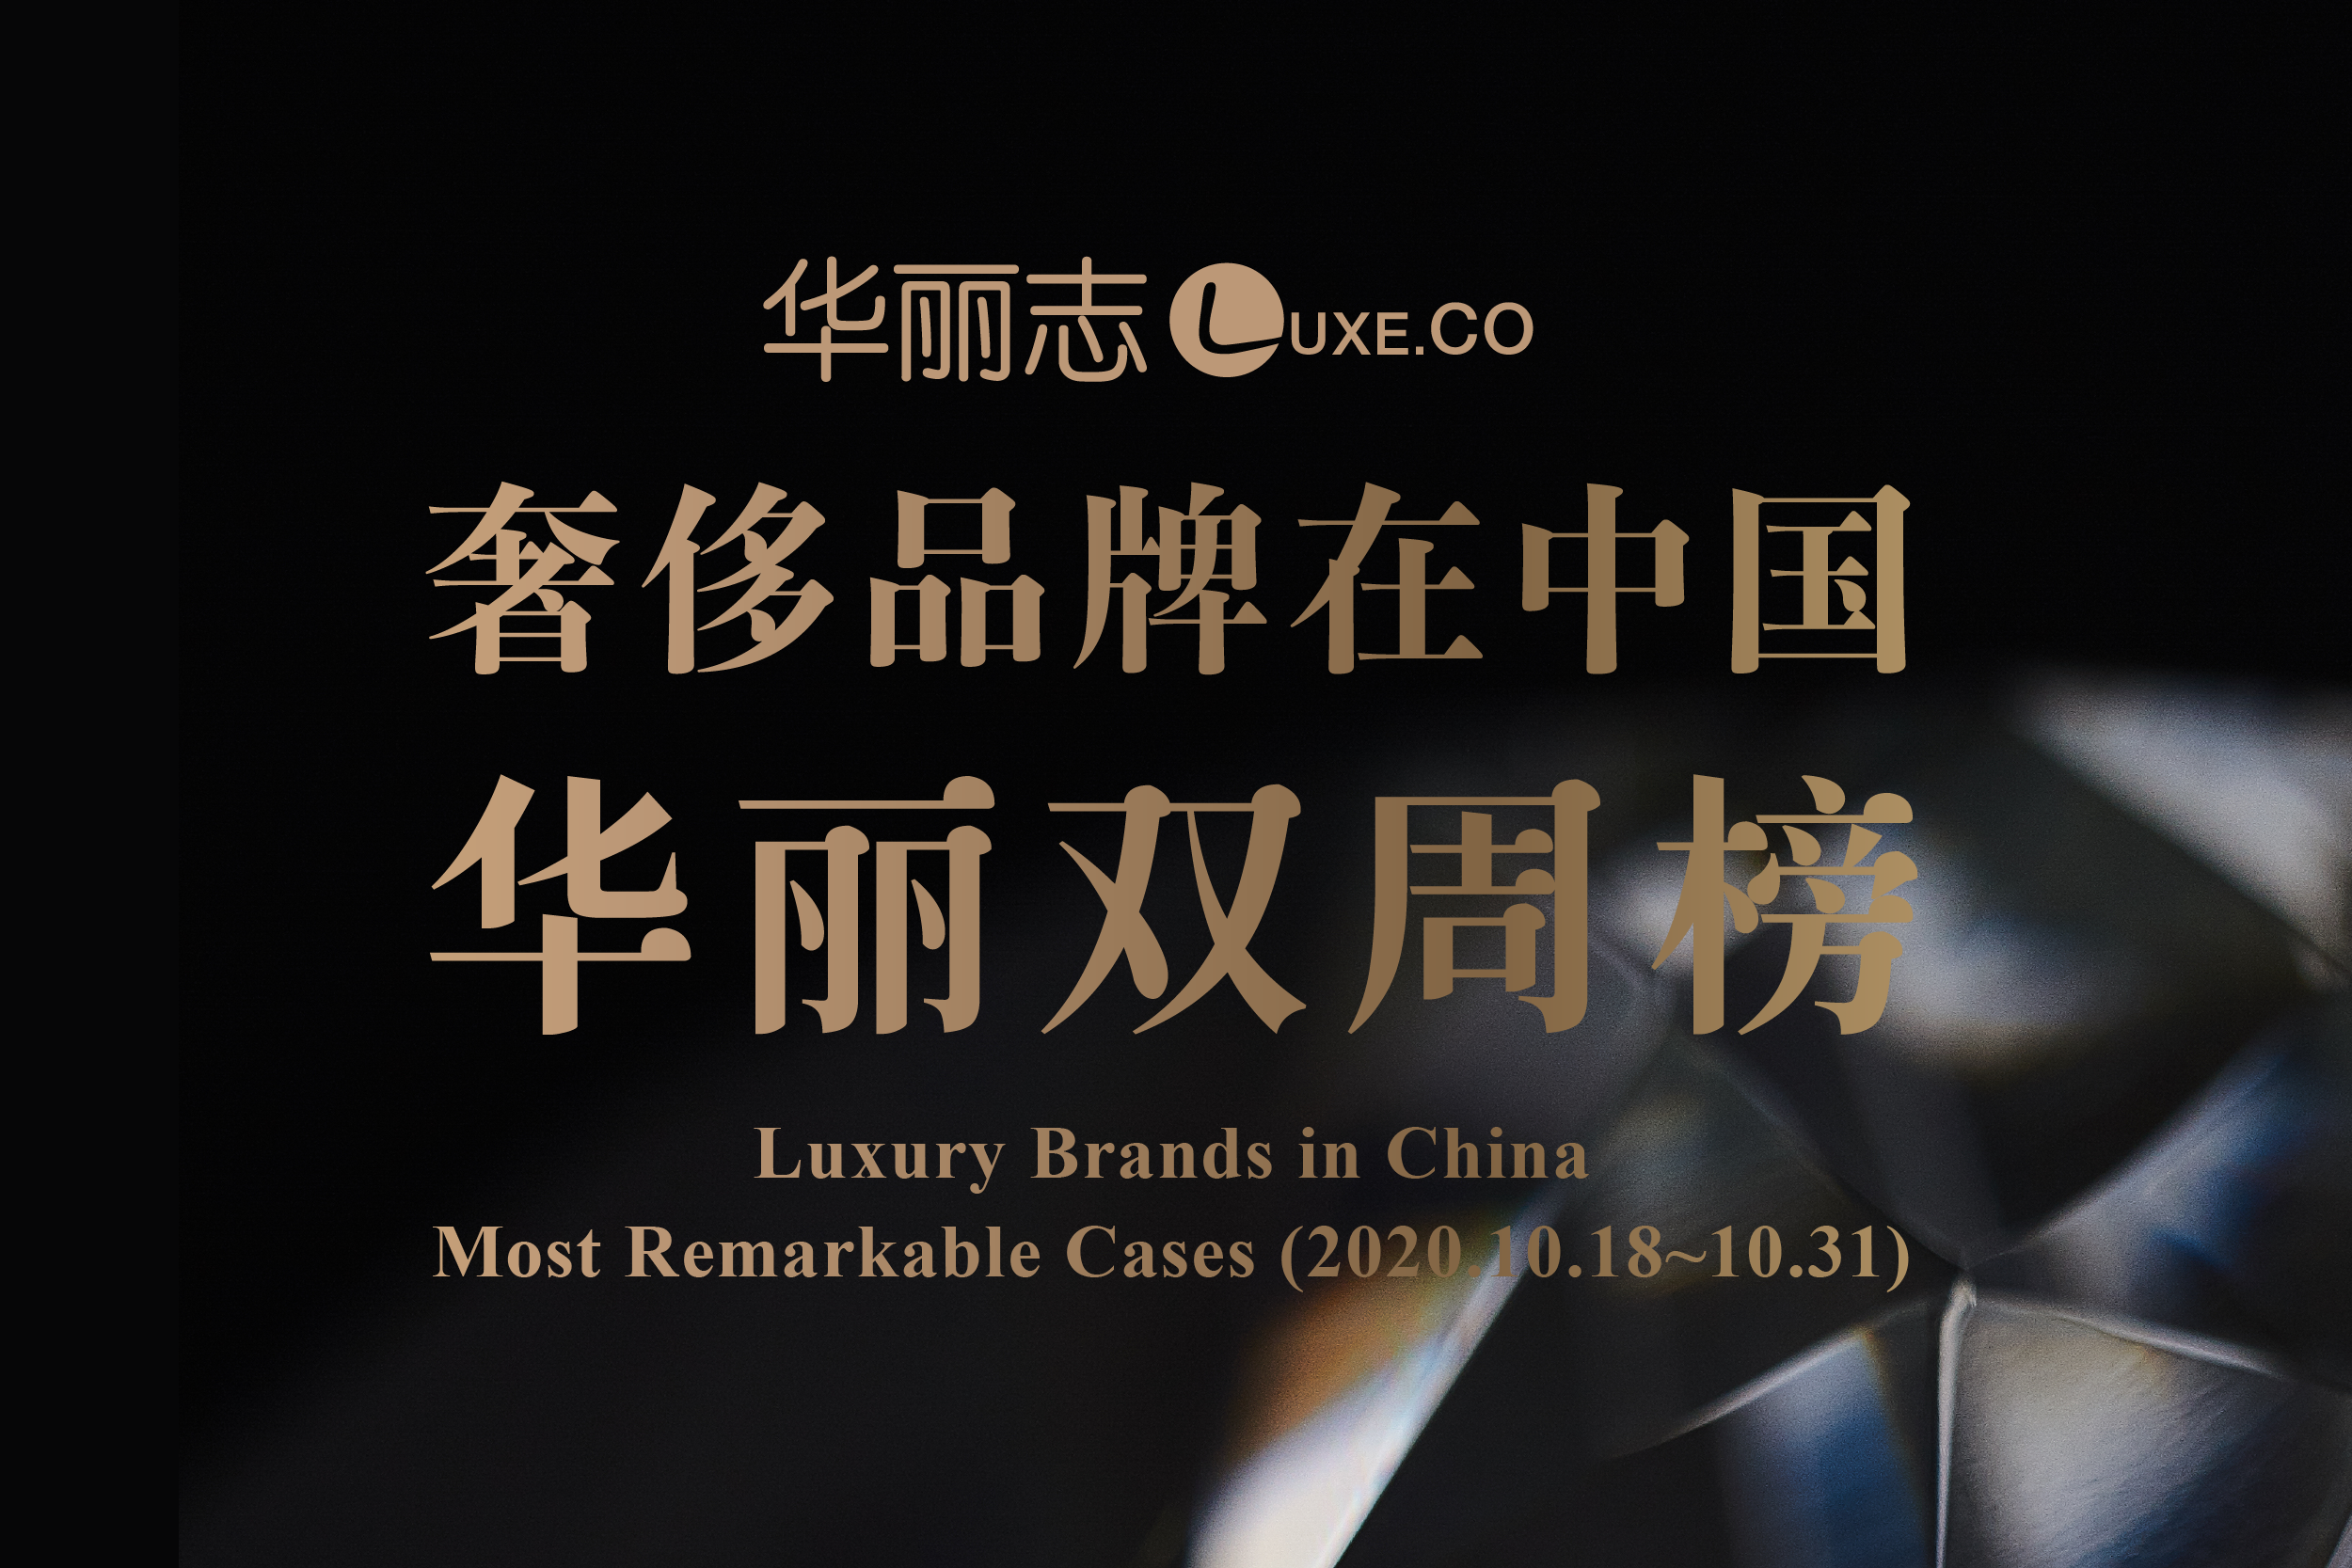 十月下旬，这三家奢侈品牌在中国的动作最值得关注！【华丽双周榜】第12期